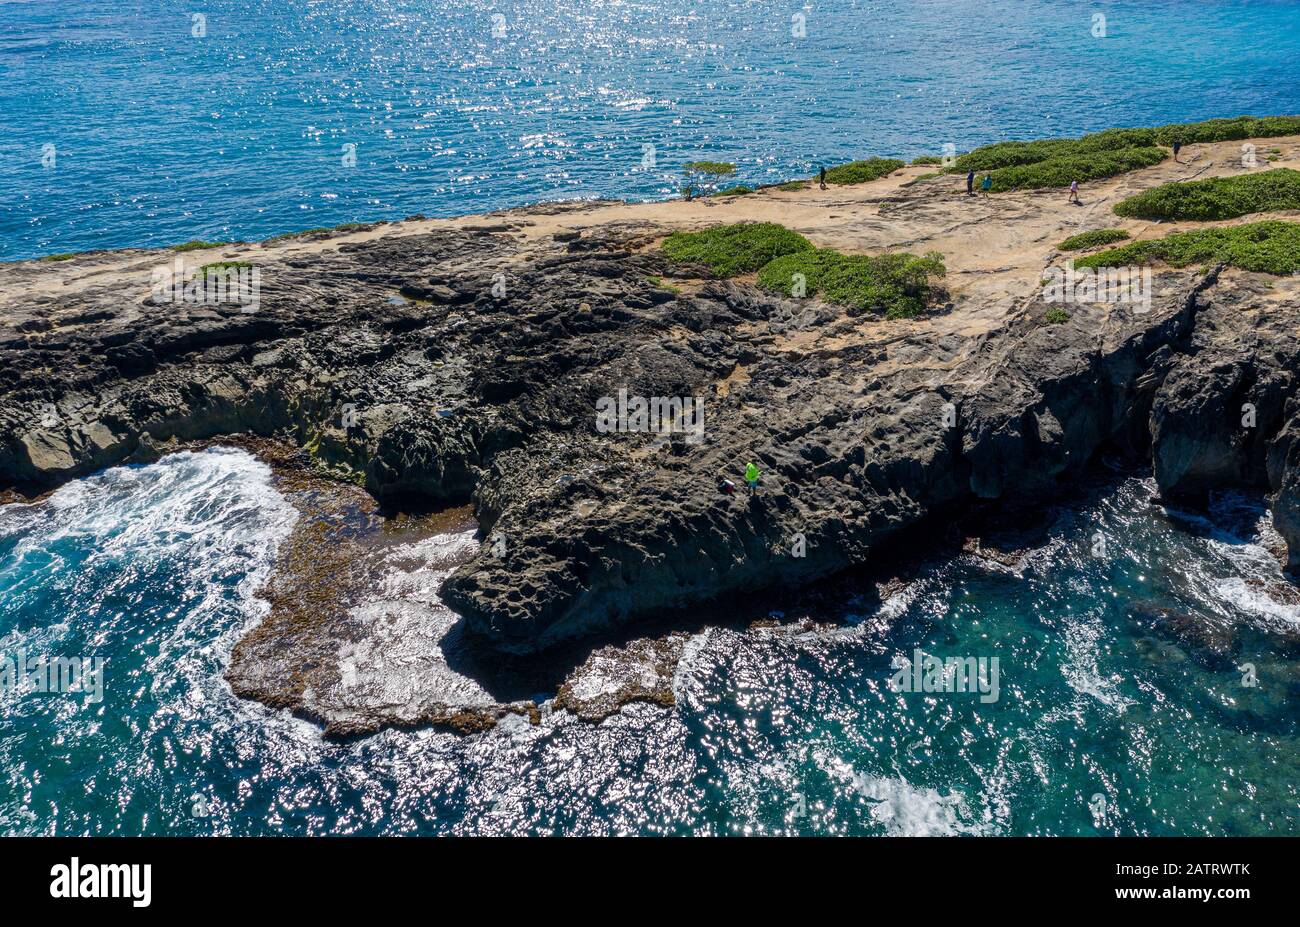 Coastline off La'ie Point on Oahu, Hawaii with sea angler on the headland Stock Photo